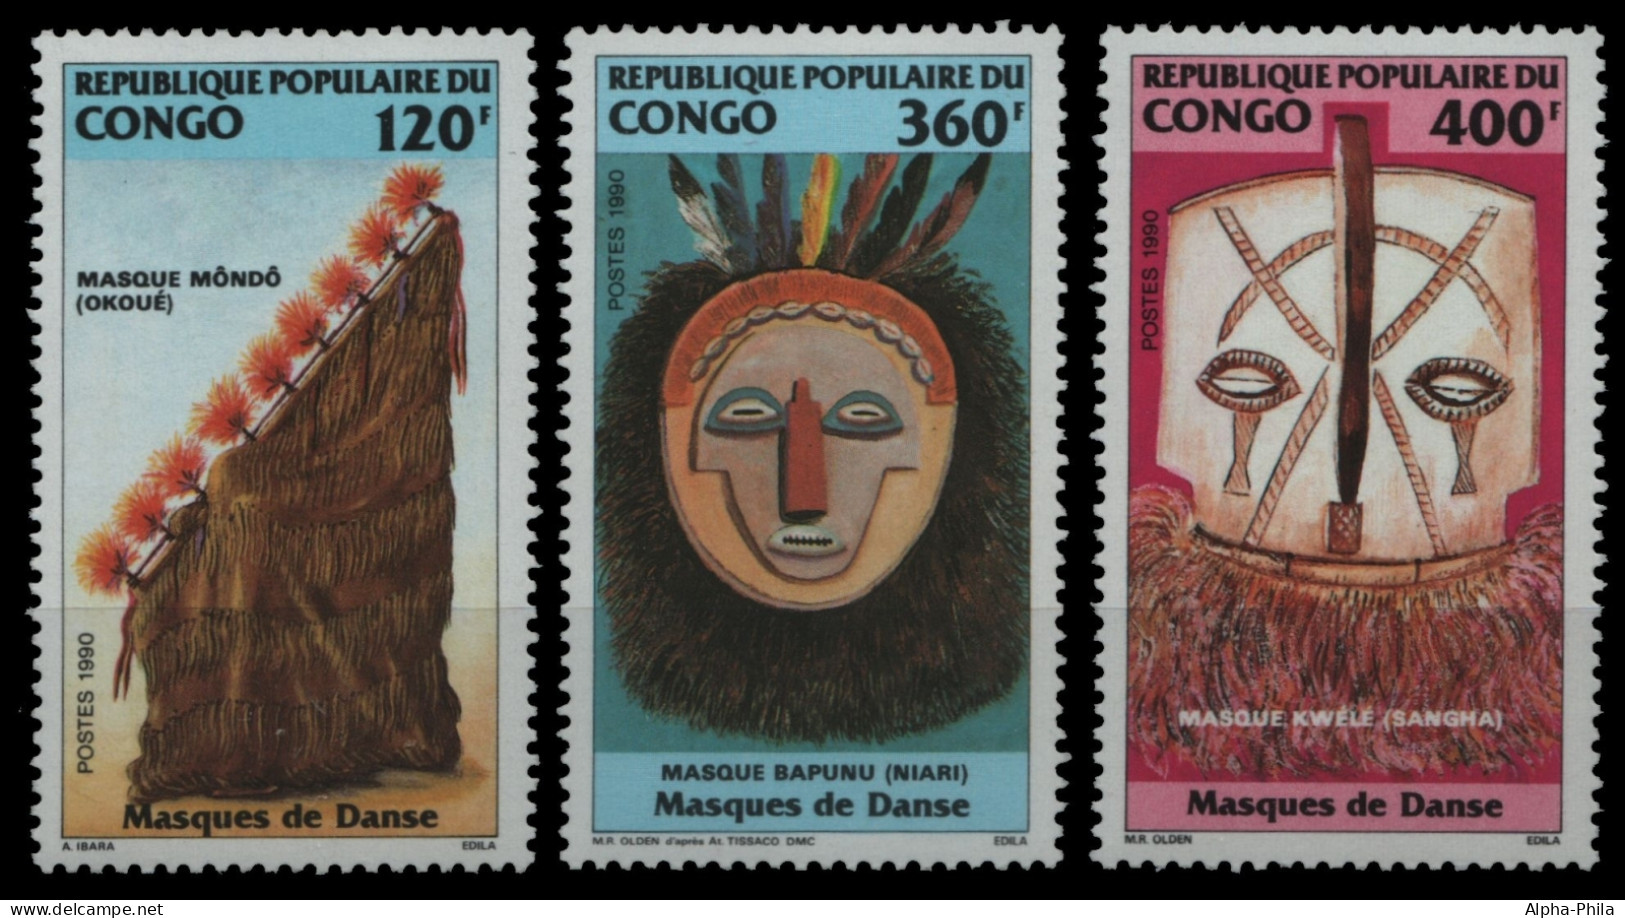 Kongo-Brazzaville 1990 - Mi-Nr. 1194-1196 ** - MNH - Masken / Masks - Mint/hinged